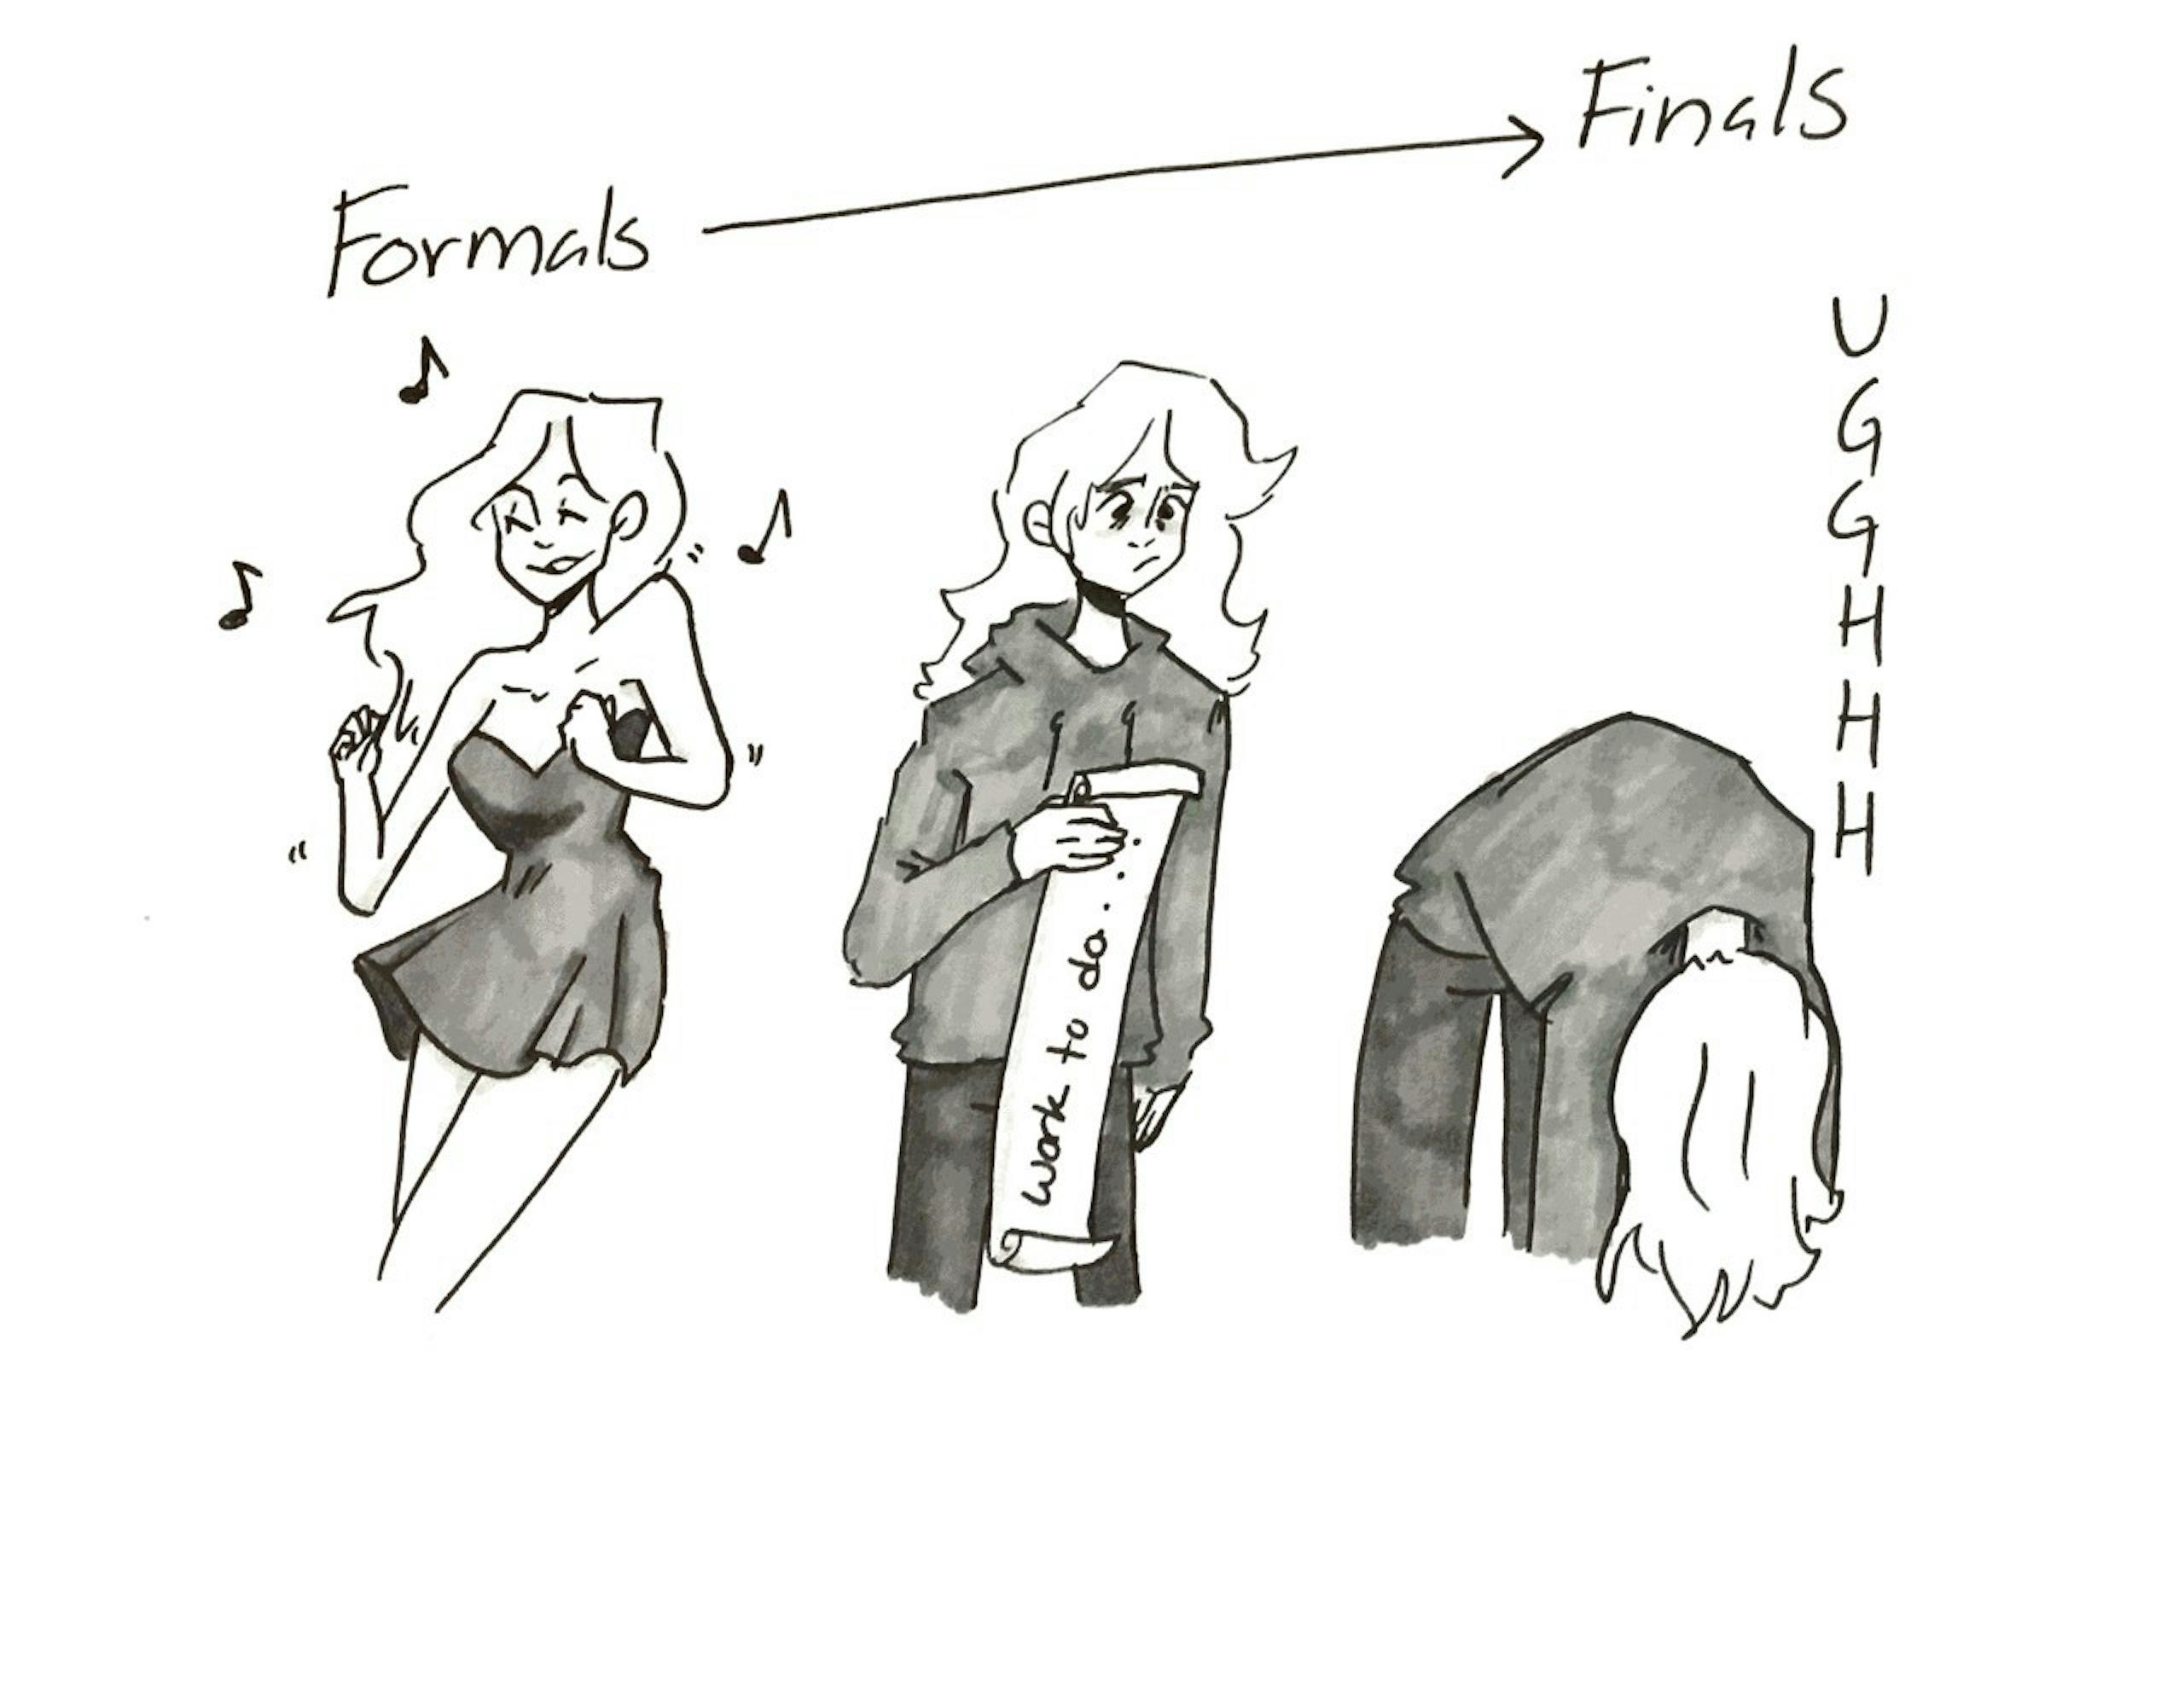 peters-formal-finals